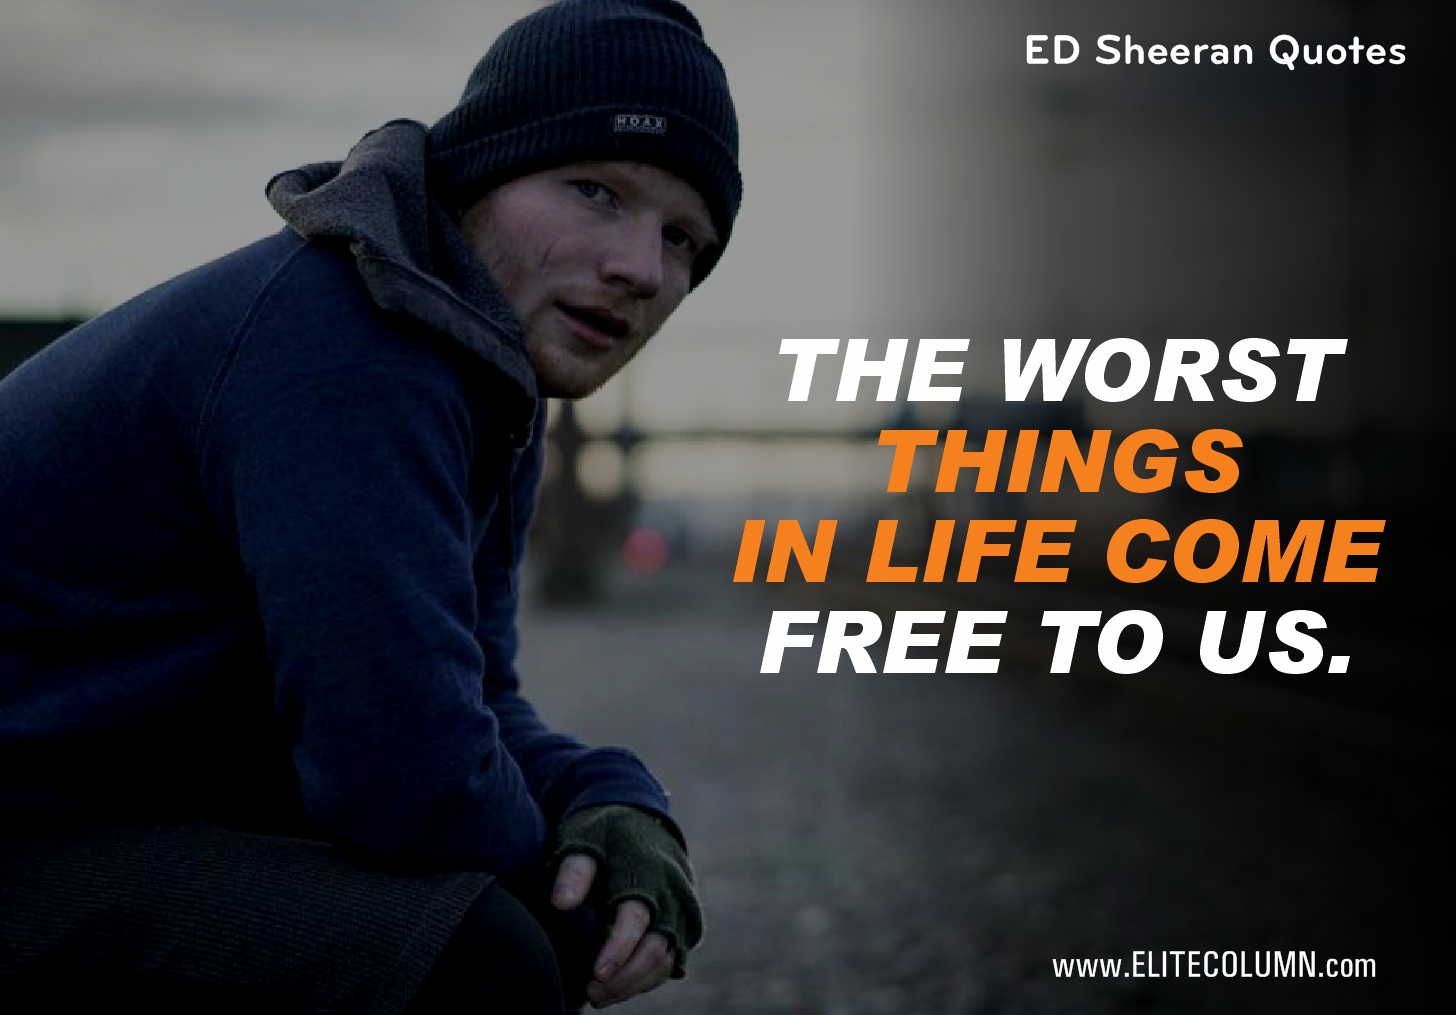 Ed Sheeran Quotes (6)